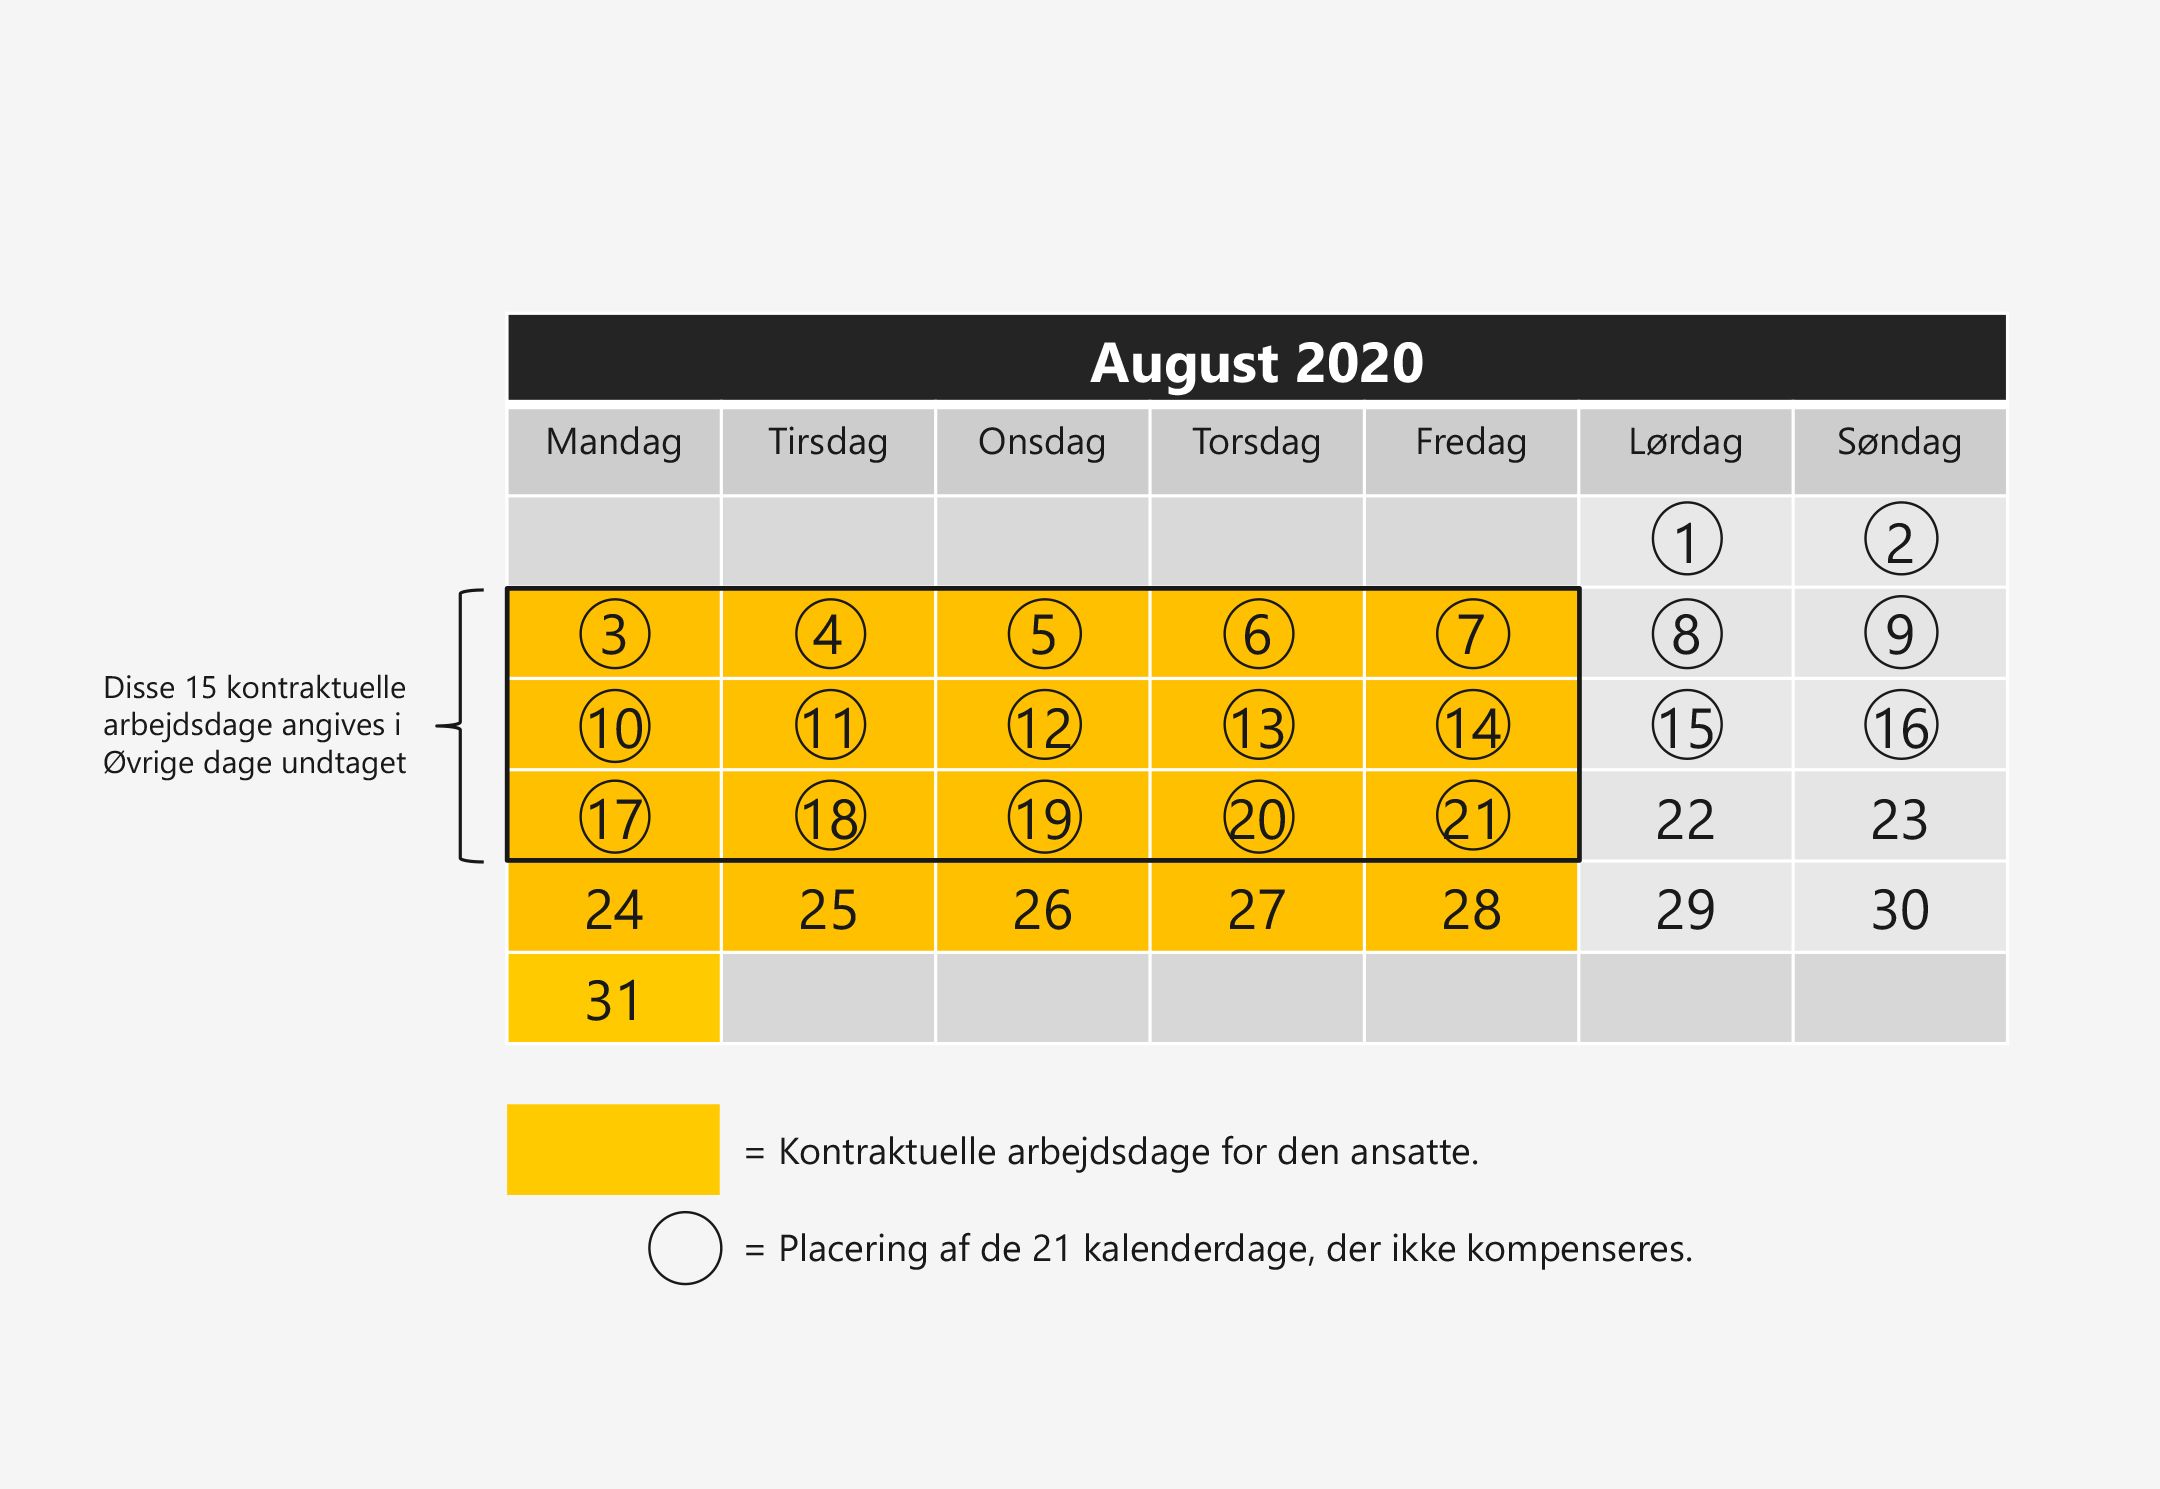 På billedet ses en kalender for august 2020.

Den ansatte har 20 kontraktuelle arbejdsdage i perioden 1. august til 29. august, da vedkommende arbejder mandag til fredag. 

De 21 kalenderdage, der ikke kompenseres, er angivet fra og med den 1. august til og med den 21. august .

Der er dermed 15 kontraktuelle arbejdsdage, der sammenfalder med de 21 kalenderdage.

Disse 15 dage skal angives i Øvrige dage undtaget. 